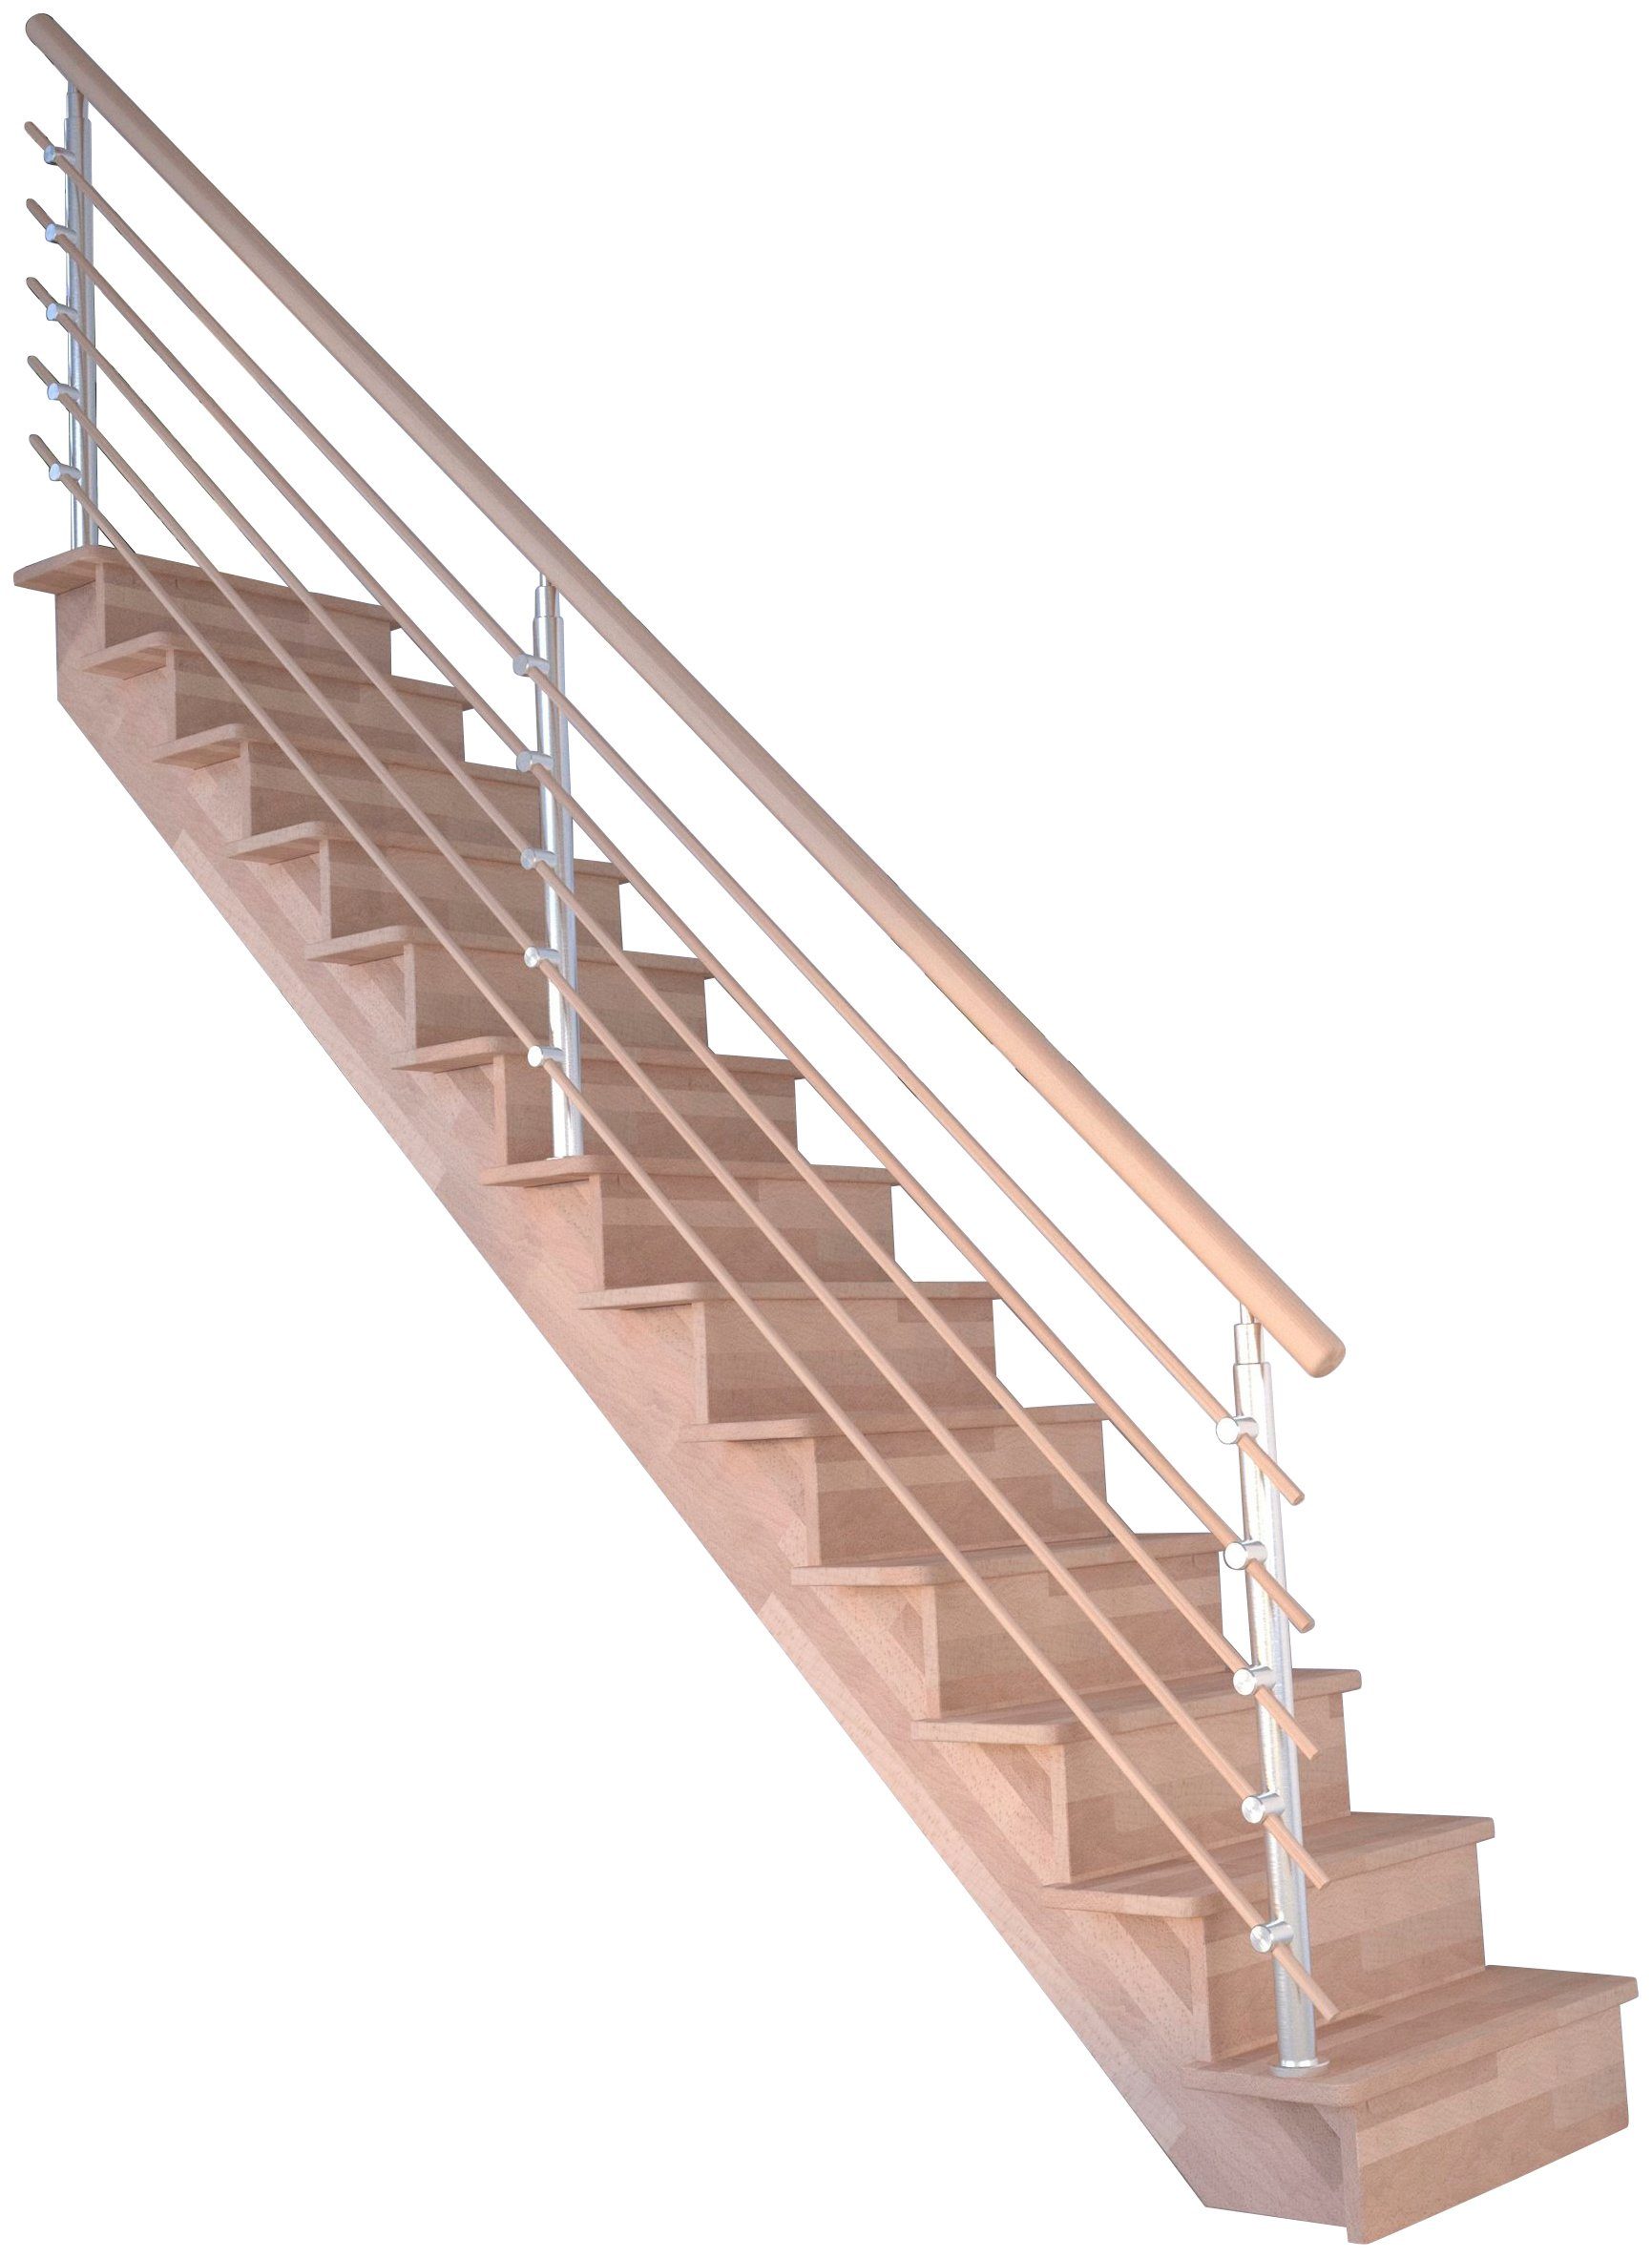 Geschosshöhen Wangenteile geschlossen, Massivholz cm, 300 Durchgehende Holzrundstäbe, Stufen bis Design-Geländer für Starwood Lindos, Systemtreppe